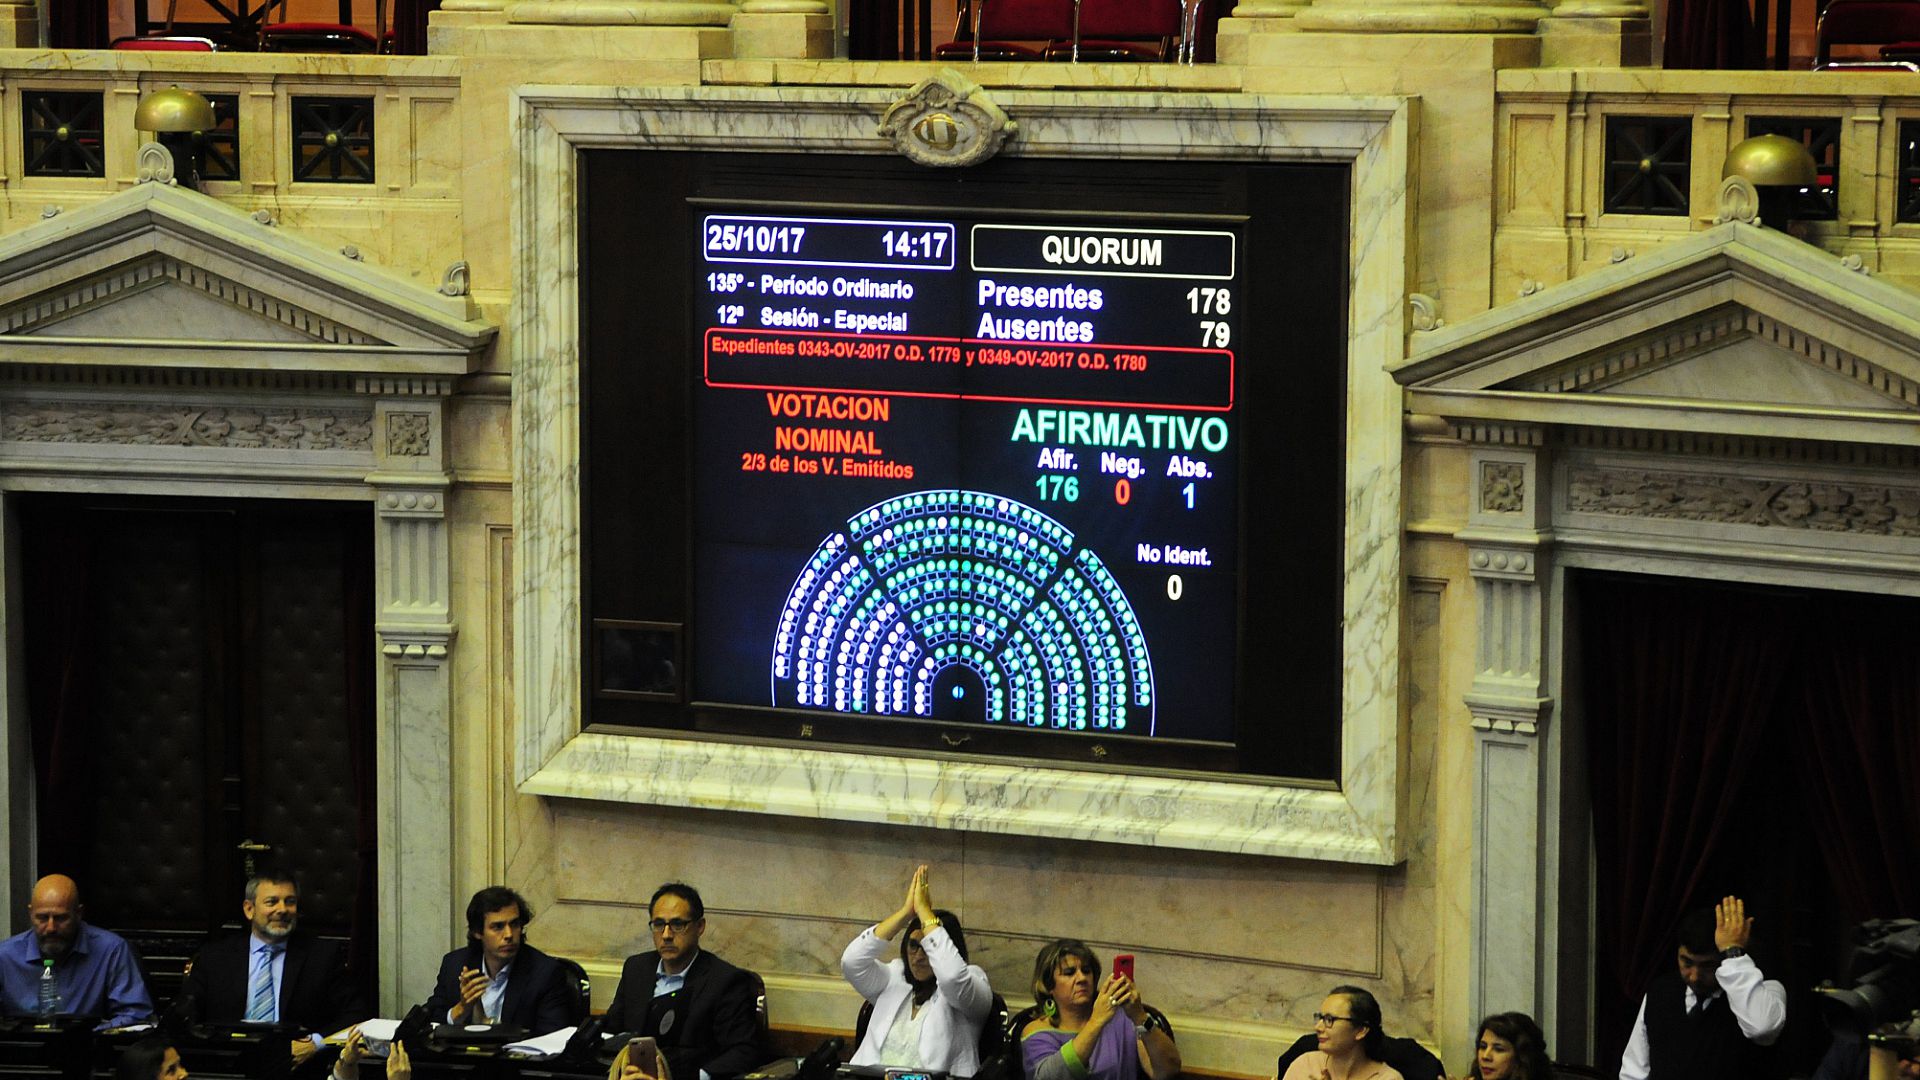 La Cámara de Diputados votó el desafuero de De Vido (foto de archivo: Maximiliano Luna)